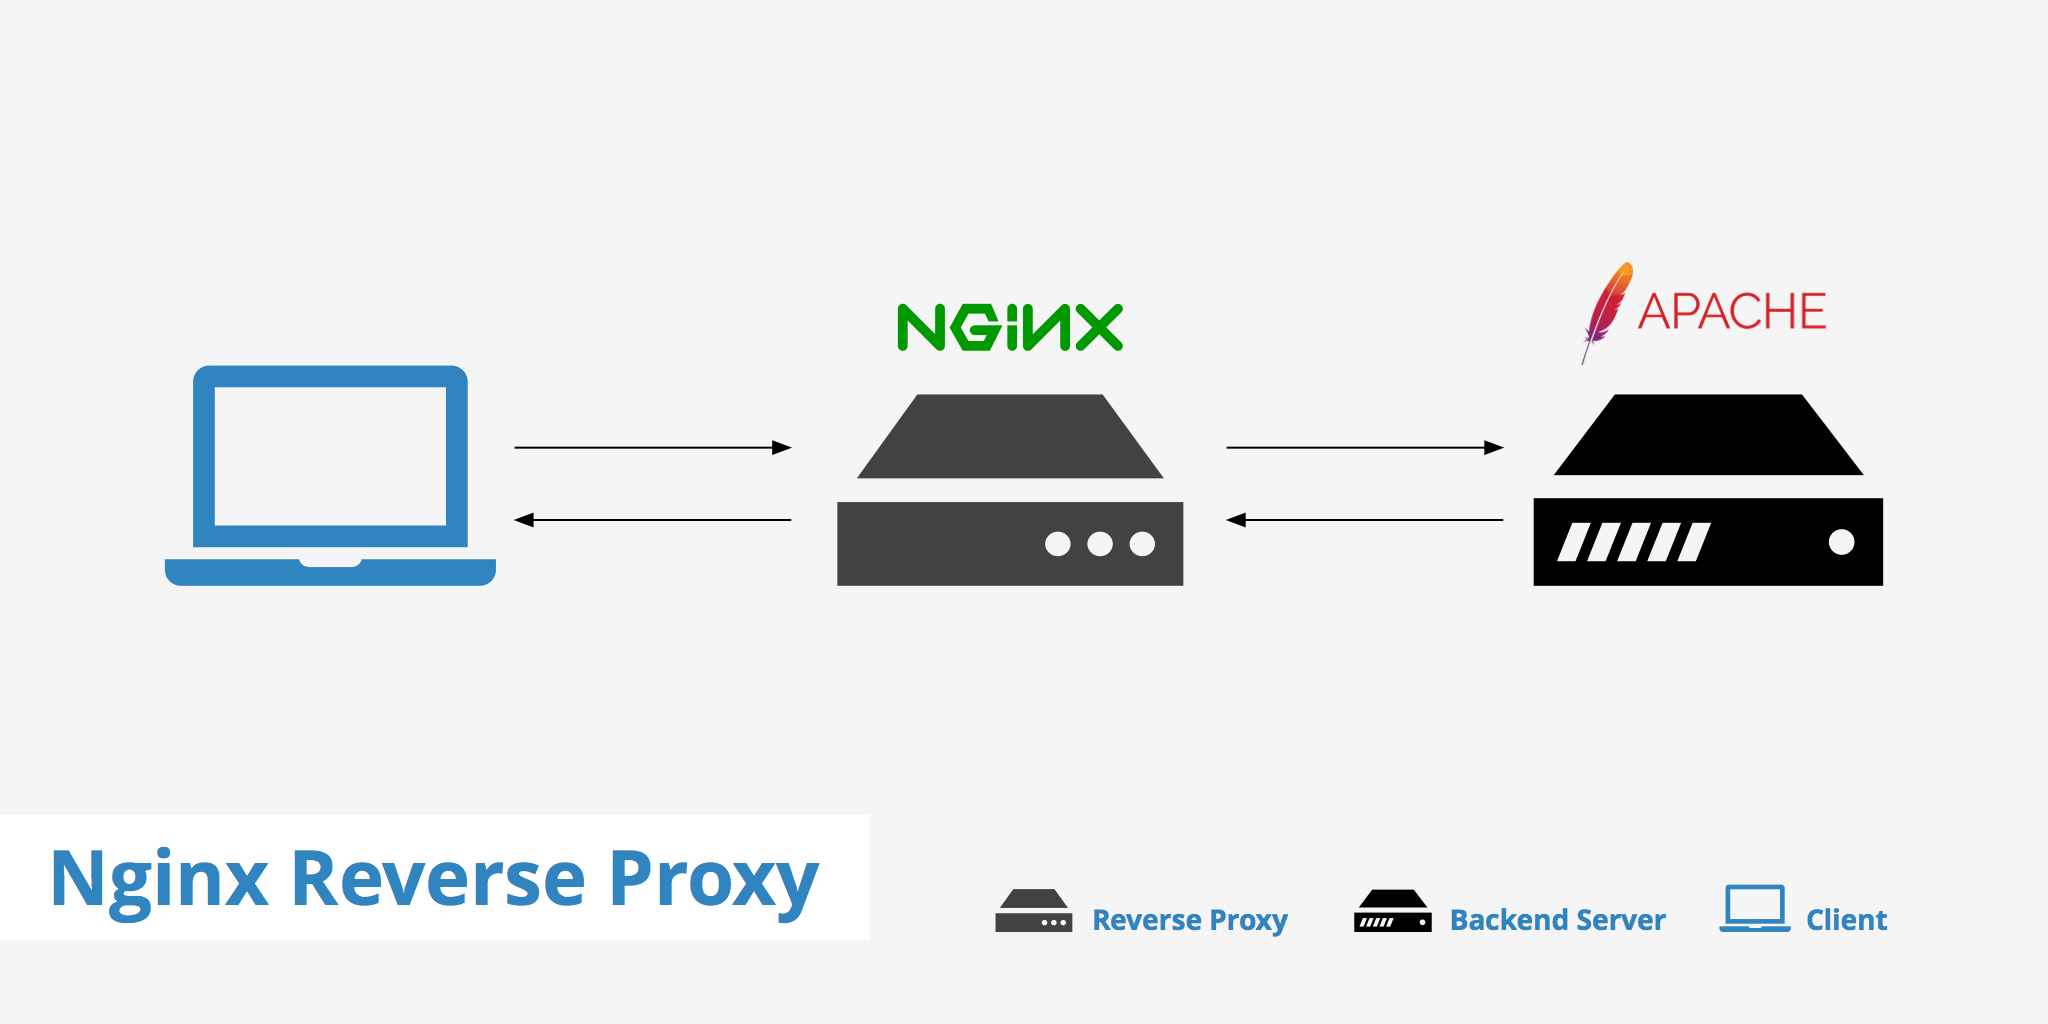 Optimizing nginx reverse proxy